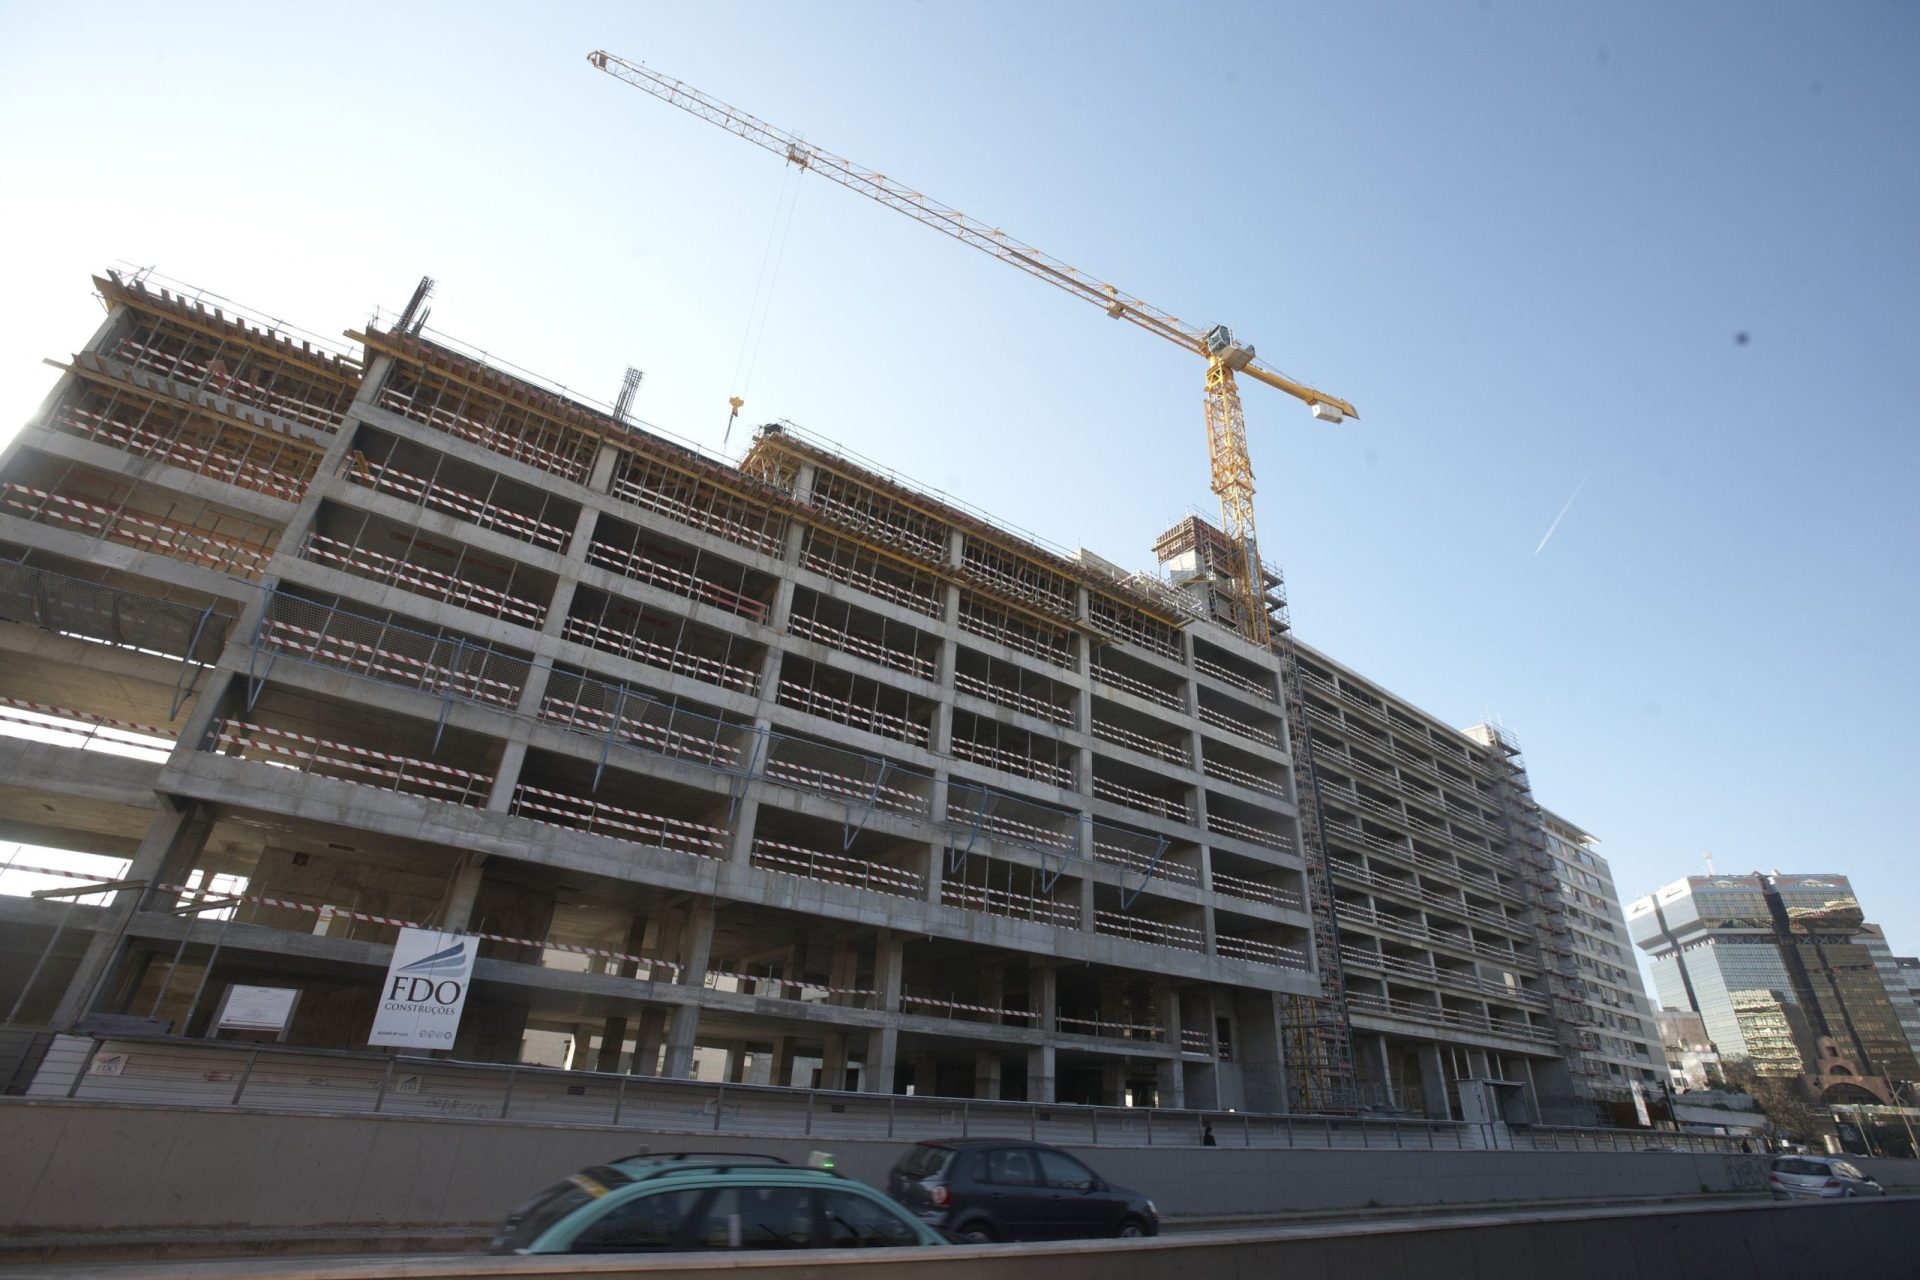 Construção em Portugal regista as maiores quedas da UE